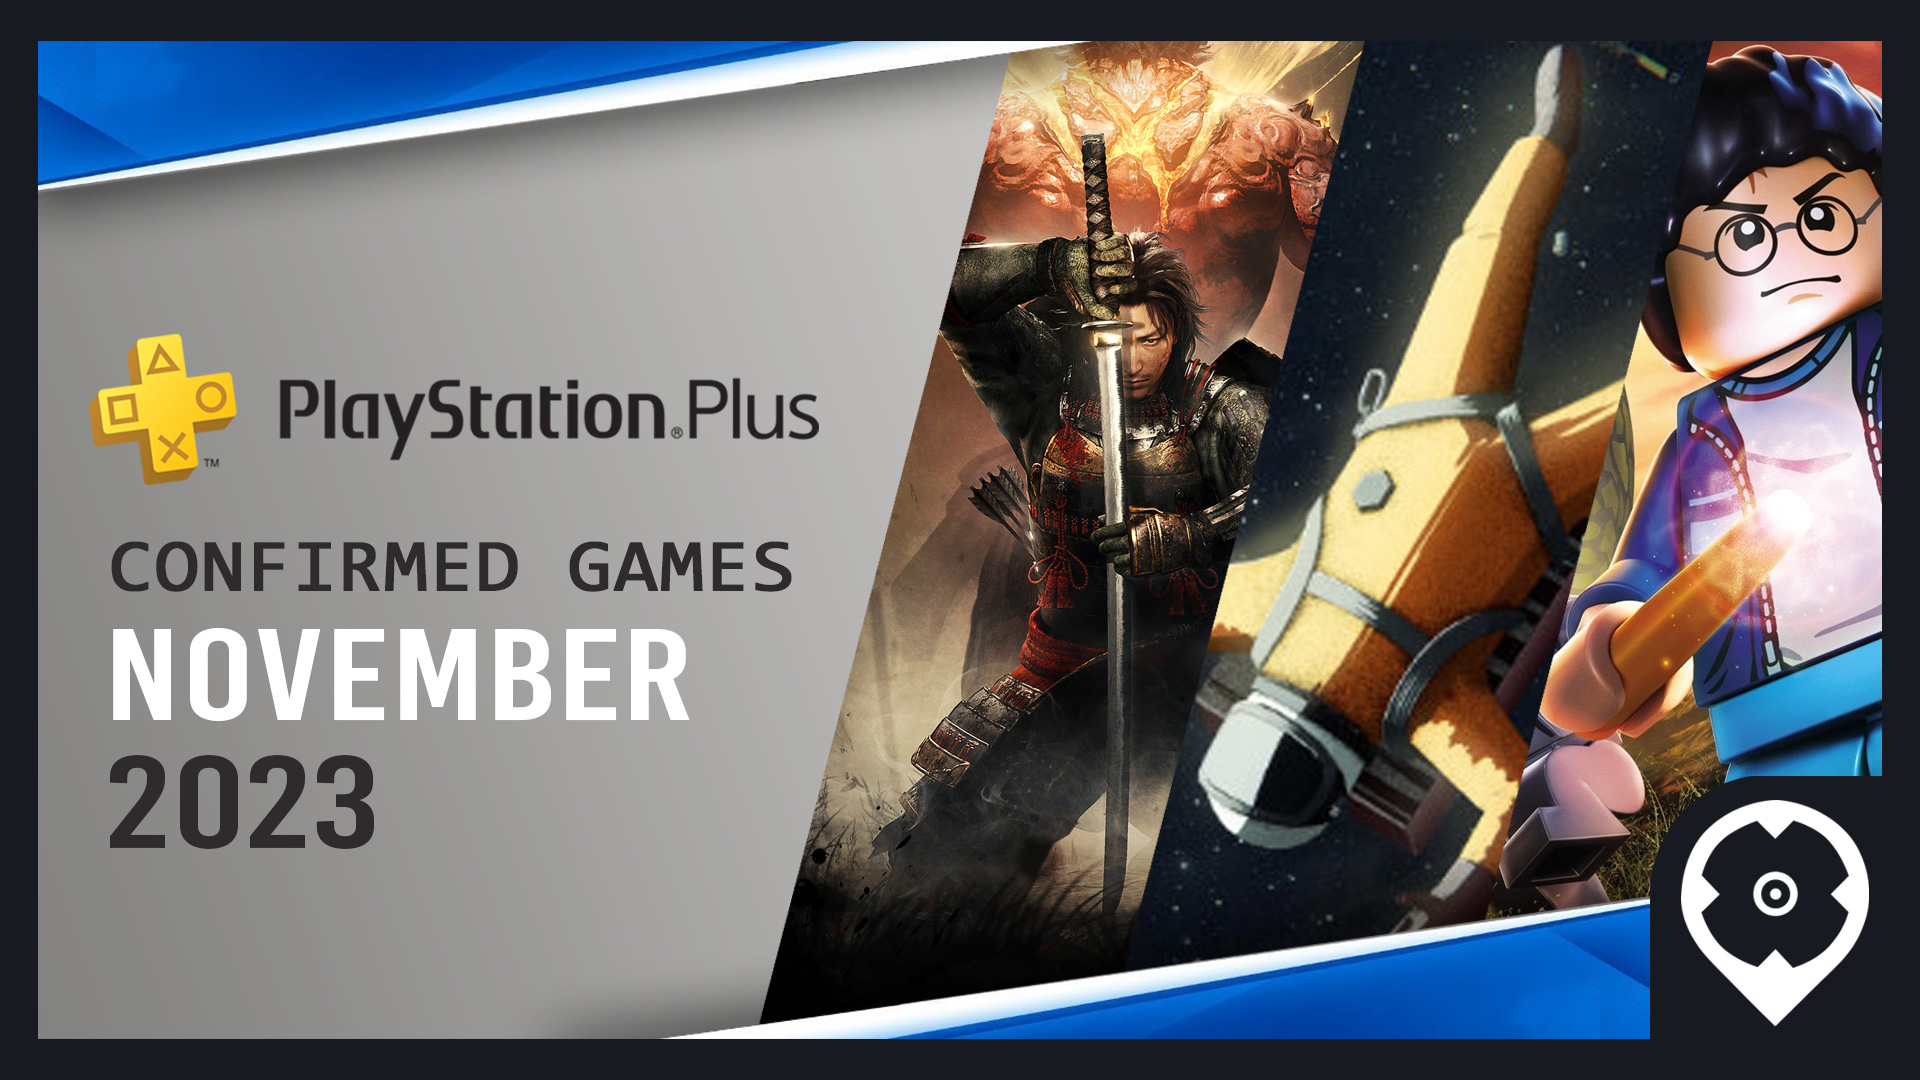 PS Plus Extra e Deluxe ganham 20 jogos em novembro